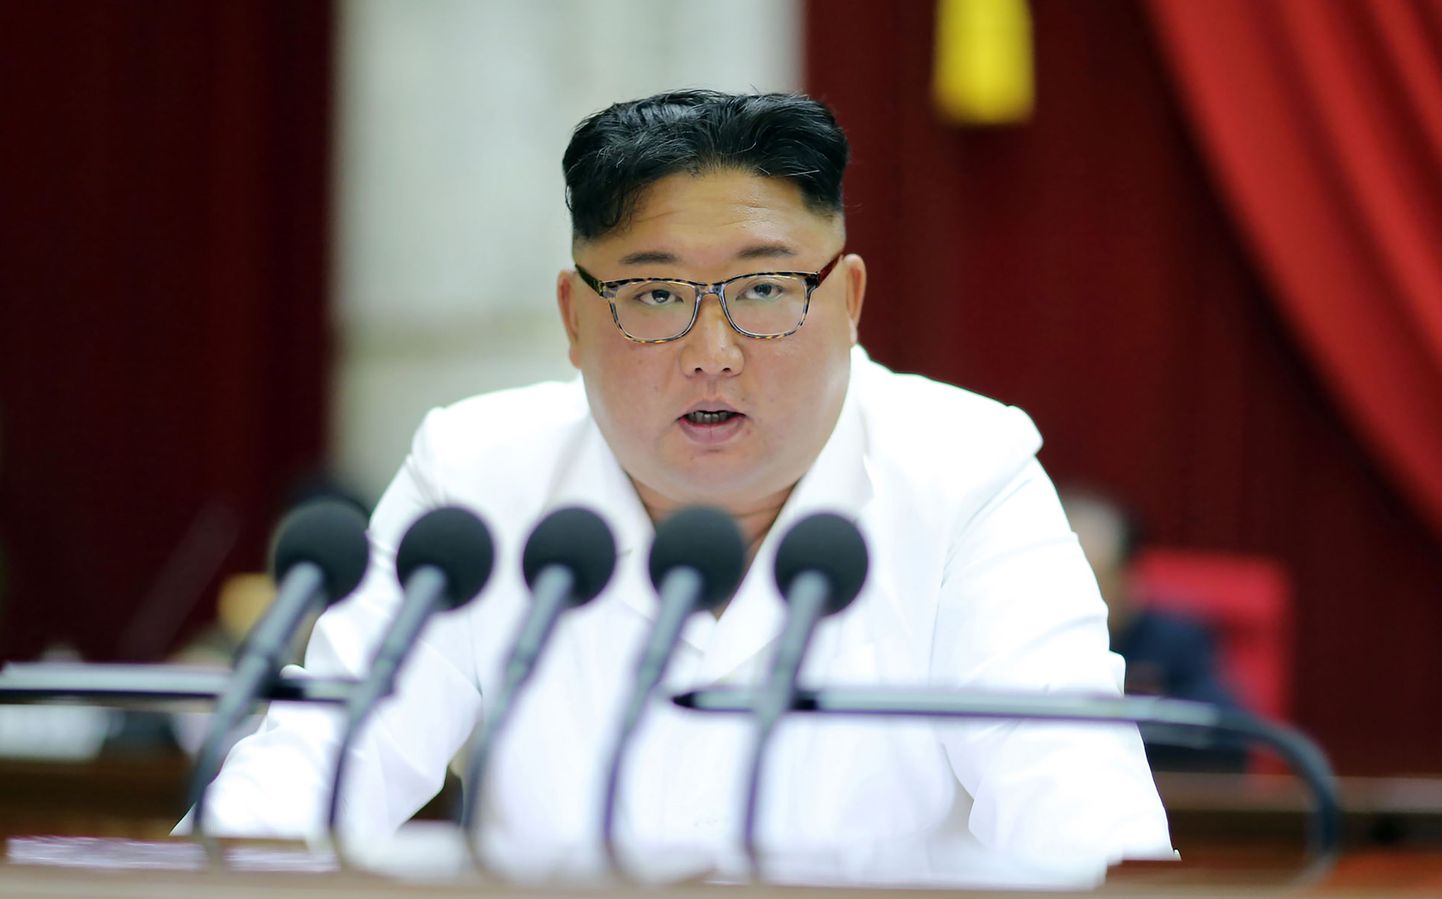 Põhja-Korea liider Kim Jong-un pühapäeval Pyongyangis Korea Töölispartei keskkomitee pleenumi teisel päeval kõnet pidamas. Foto avaldas esmaspäeval Põhja-Korea riiklik uudisteagentuur KCNA.